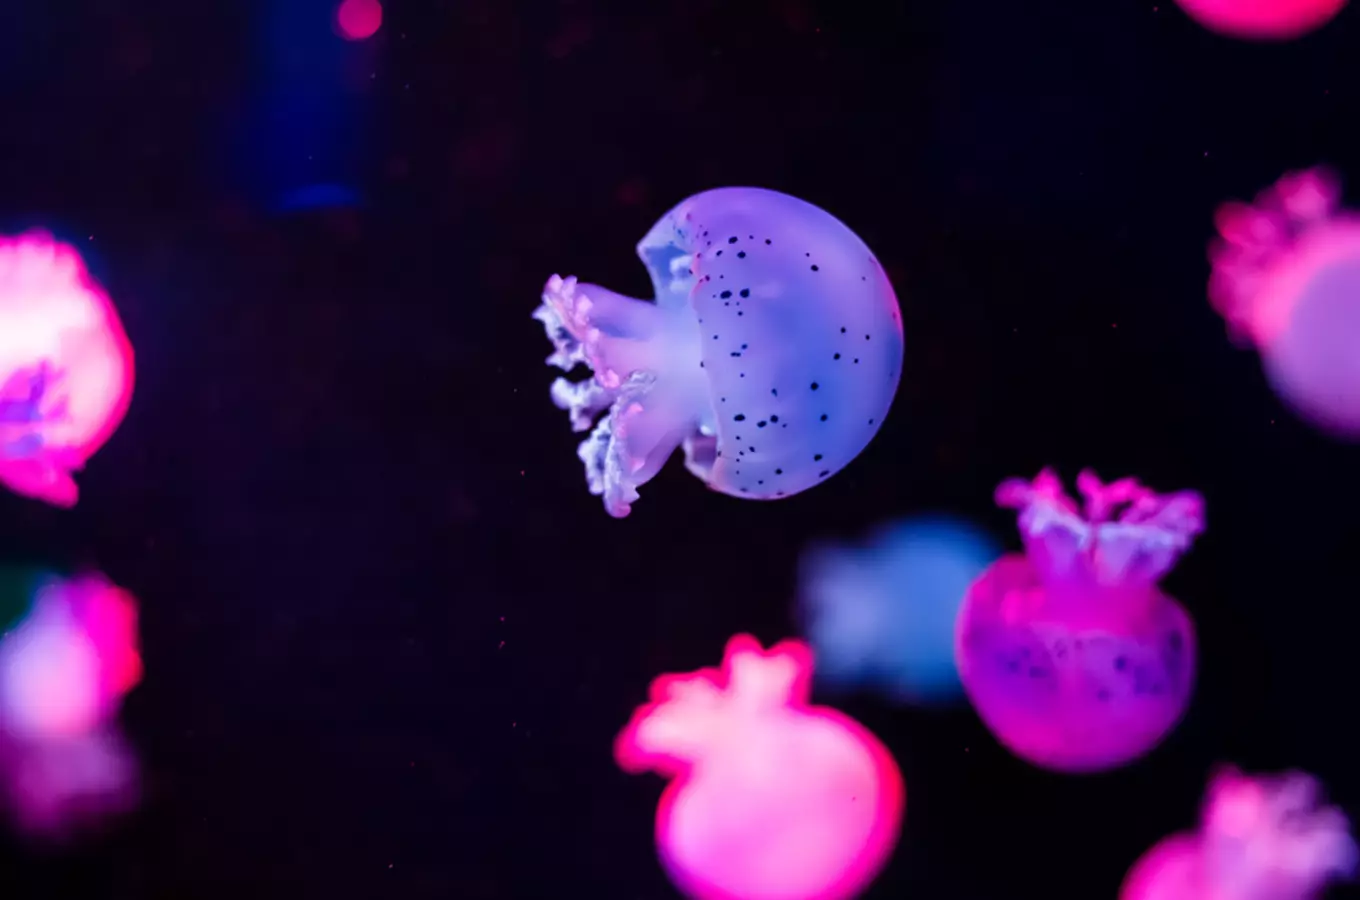 Expozice Medúzárium – medúzy v Zooparku Chomutov